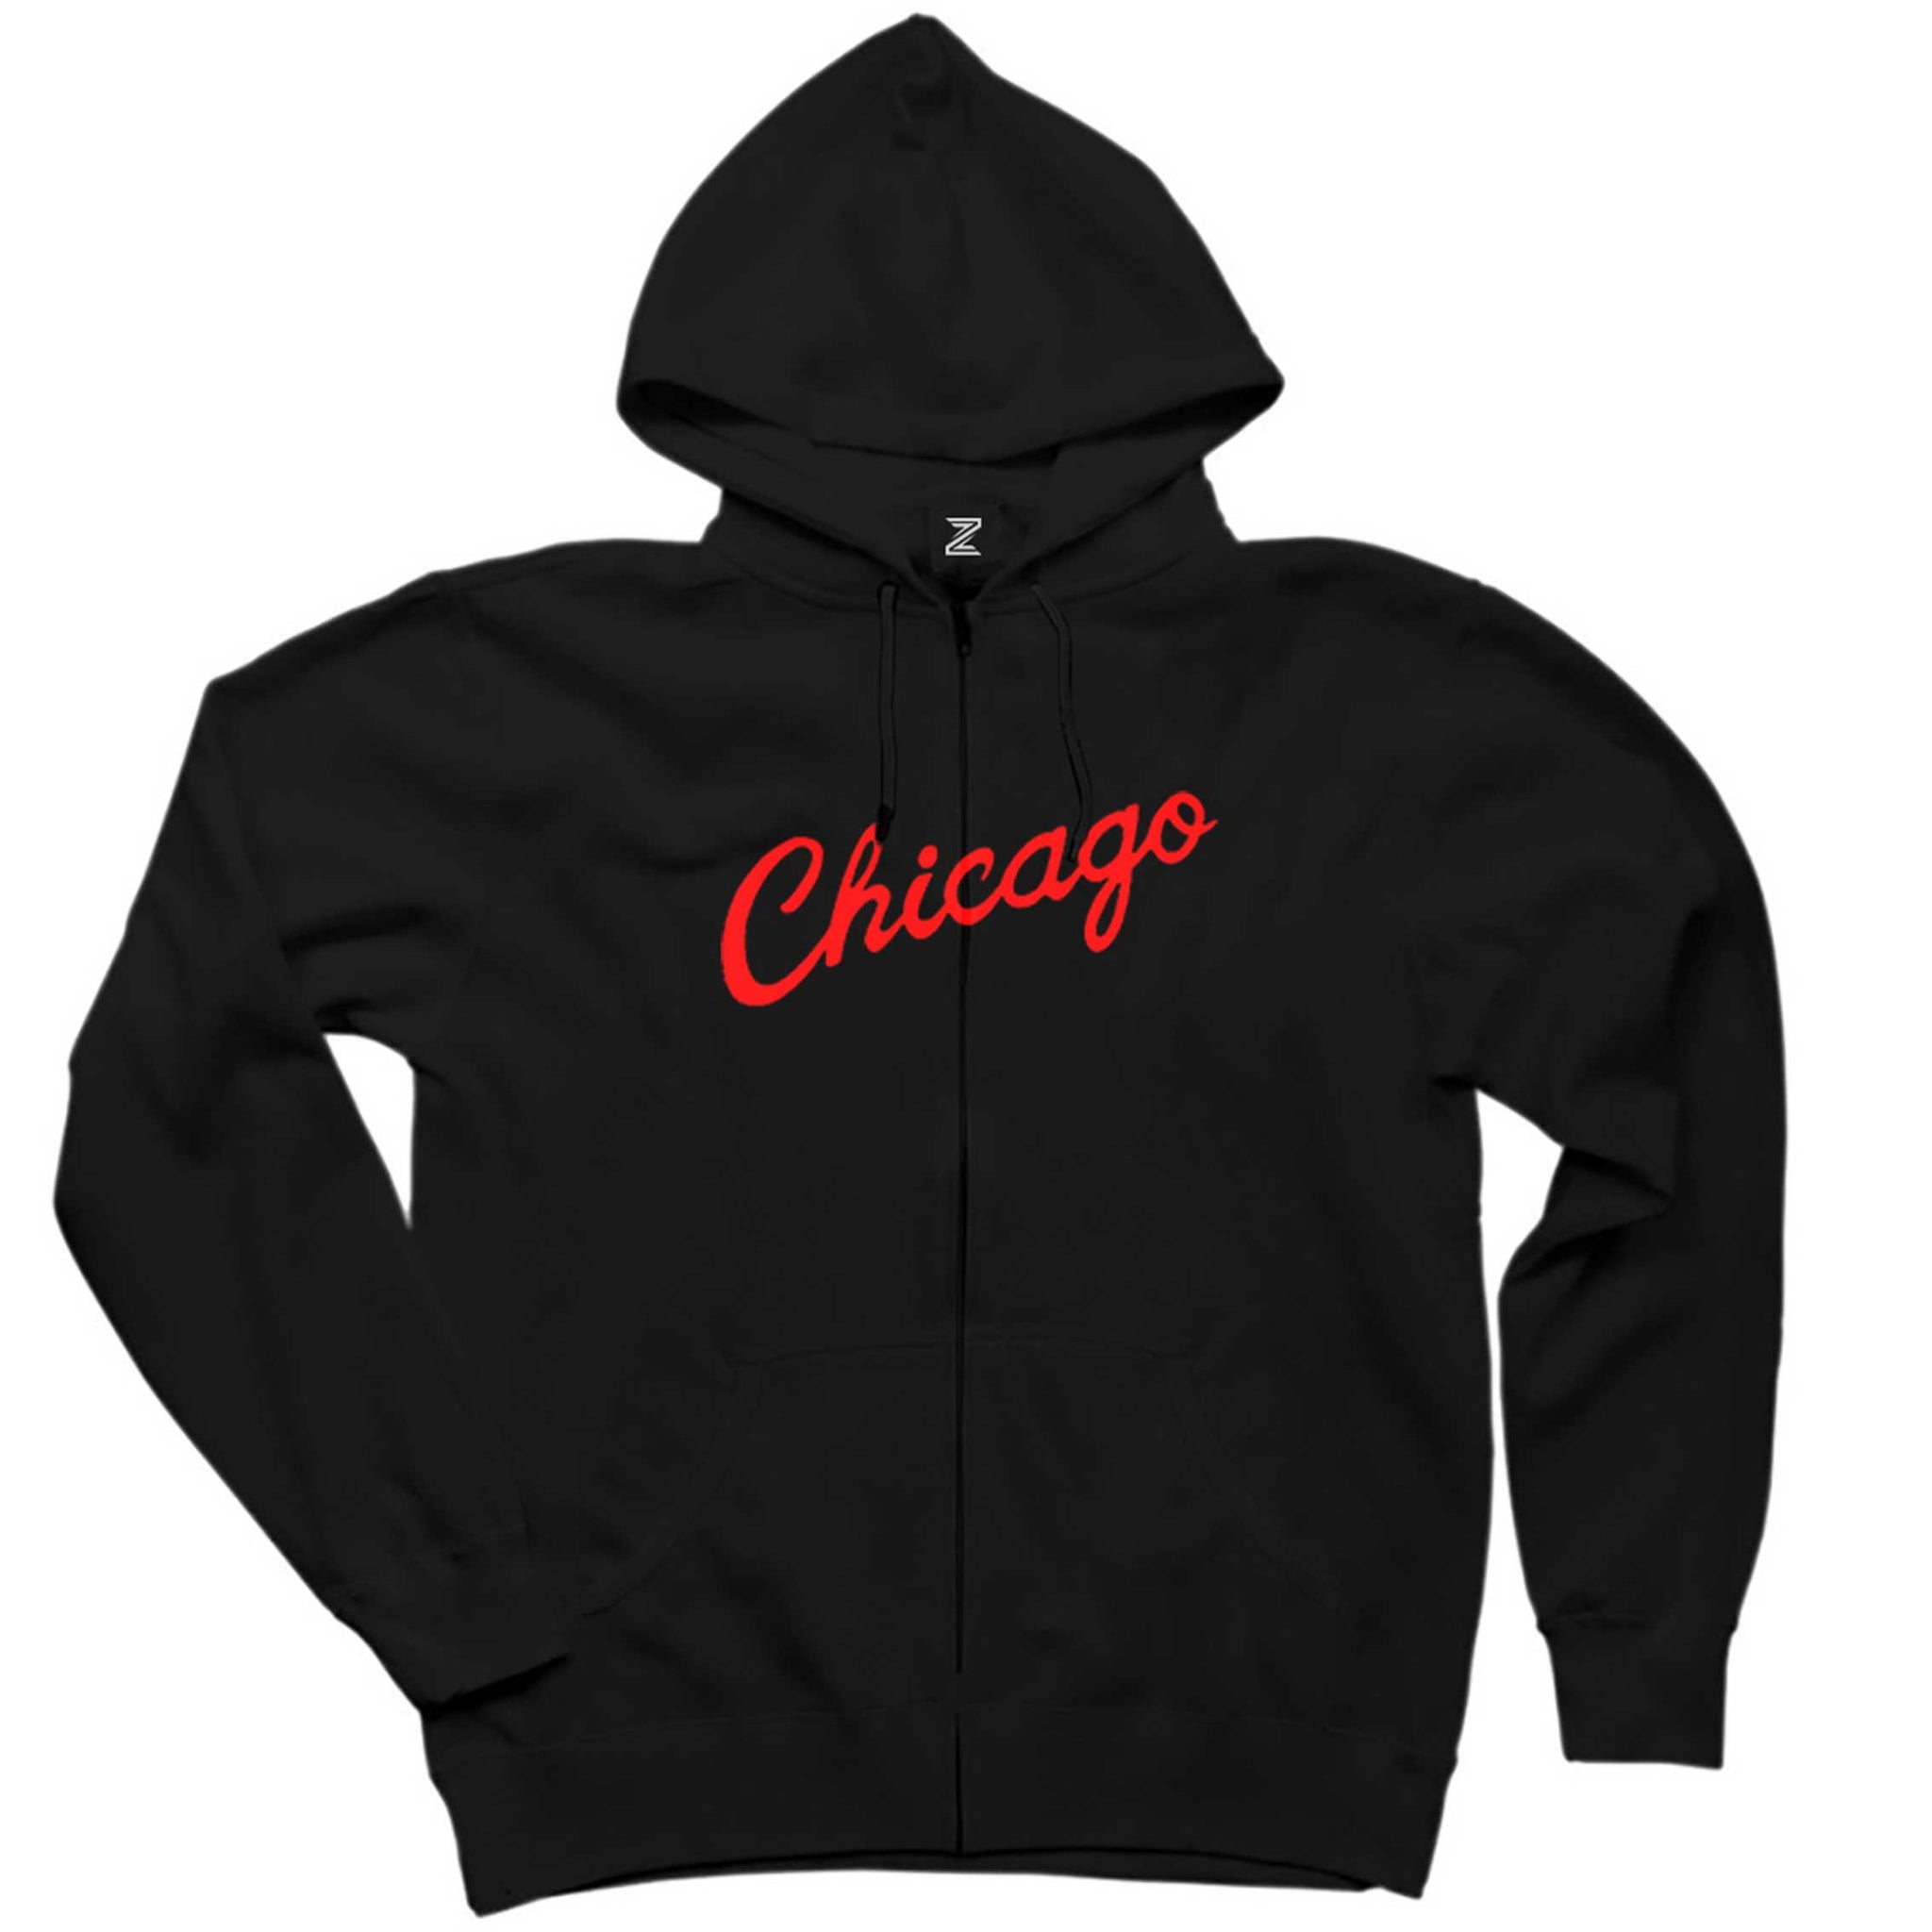 Chicago Yazı Siyah Fermuarlı Kapşonlu Sweatshirt